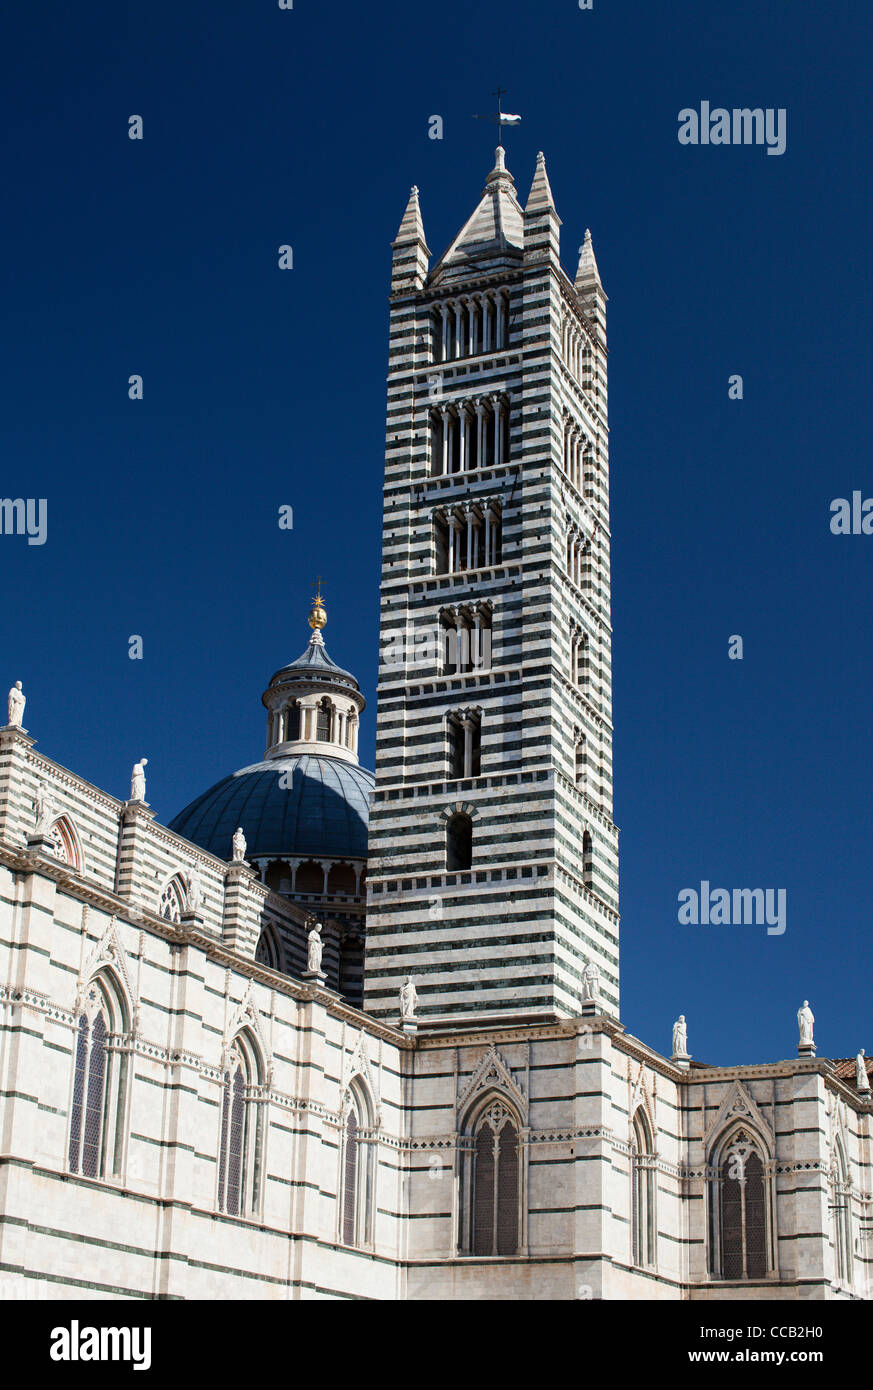 La torre de la catedral (Duomo), Siena. Italia. Foto de stock